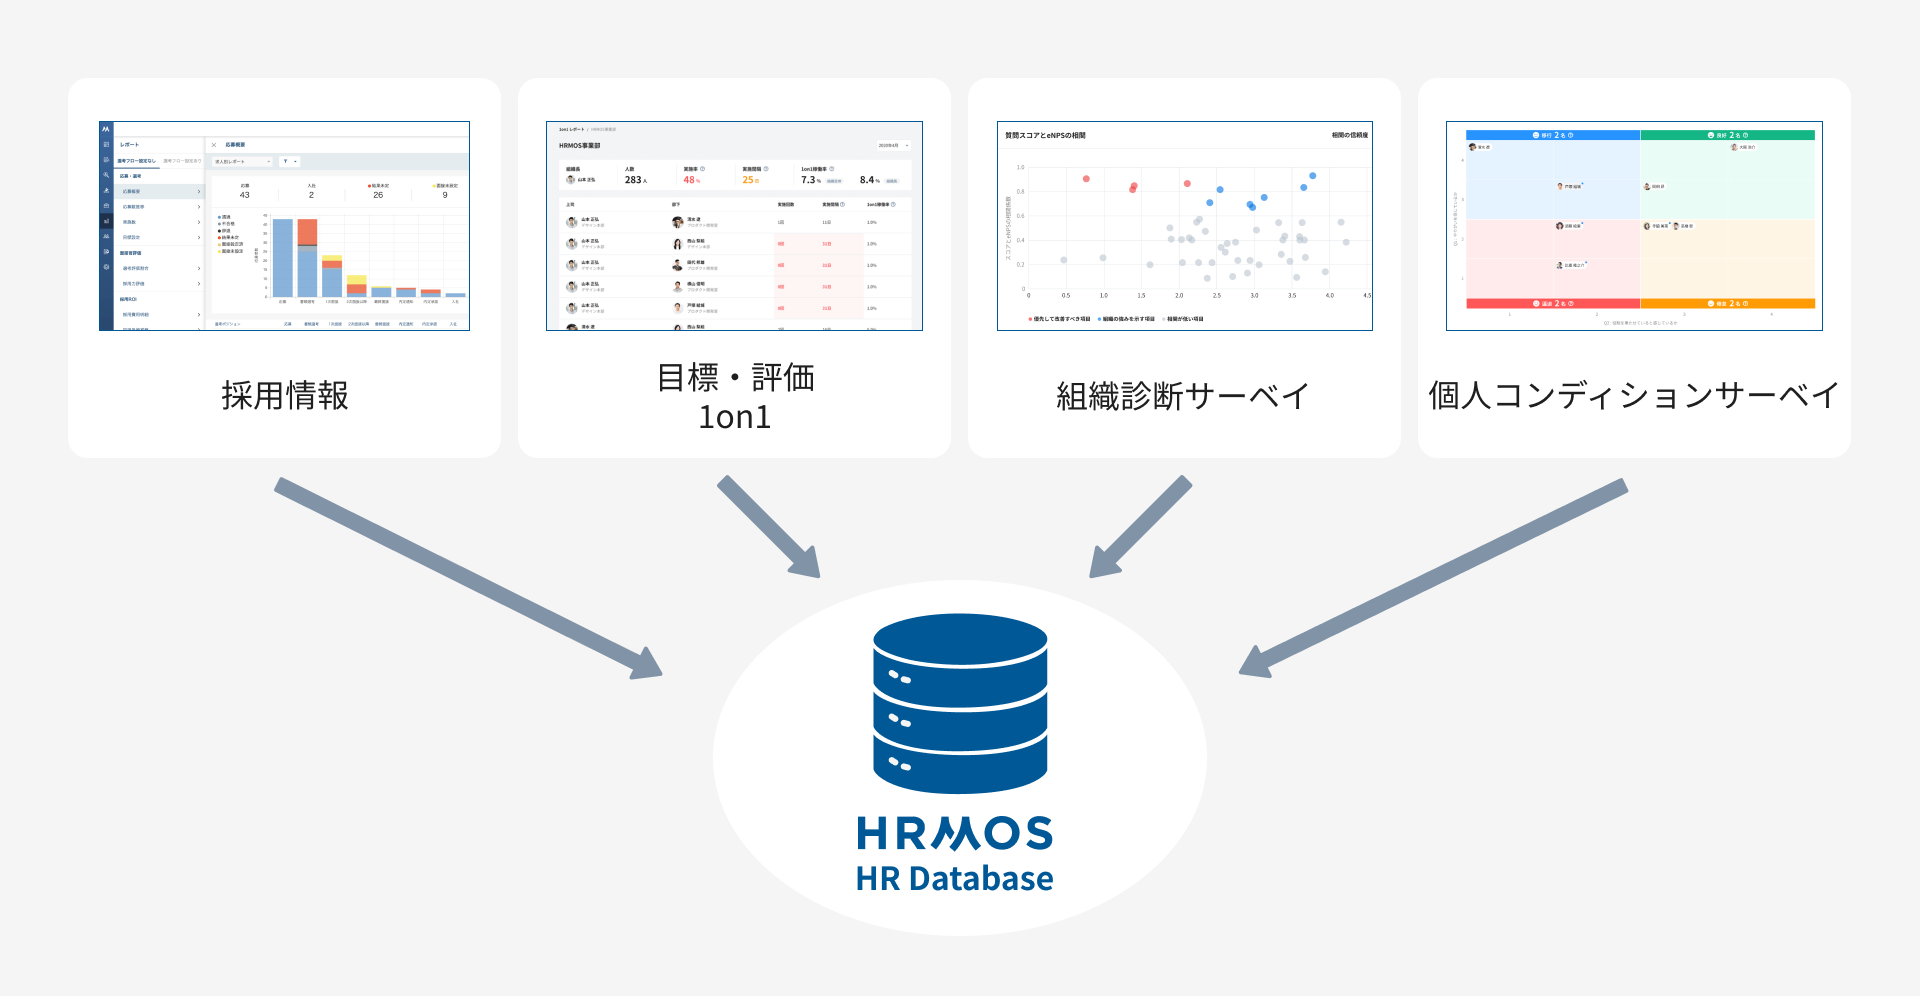 HRMOSは「採用情報」「目標・評価1on1」「組織診断サーベイ」「個人コンディションサーベイ」など様々なプロダクトがHR Databeseとしてまとめあげられています